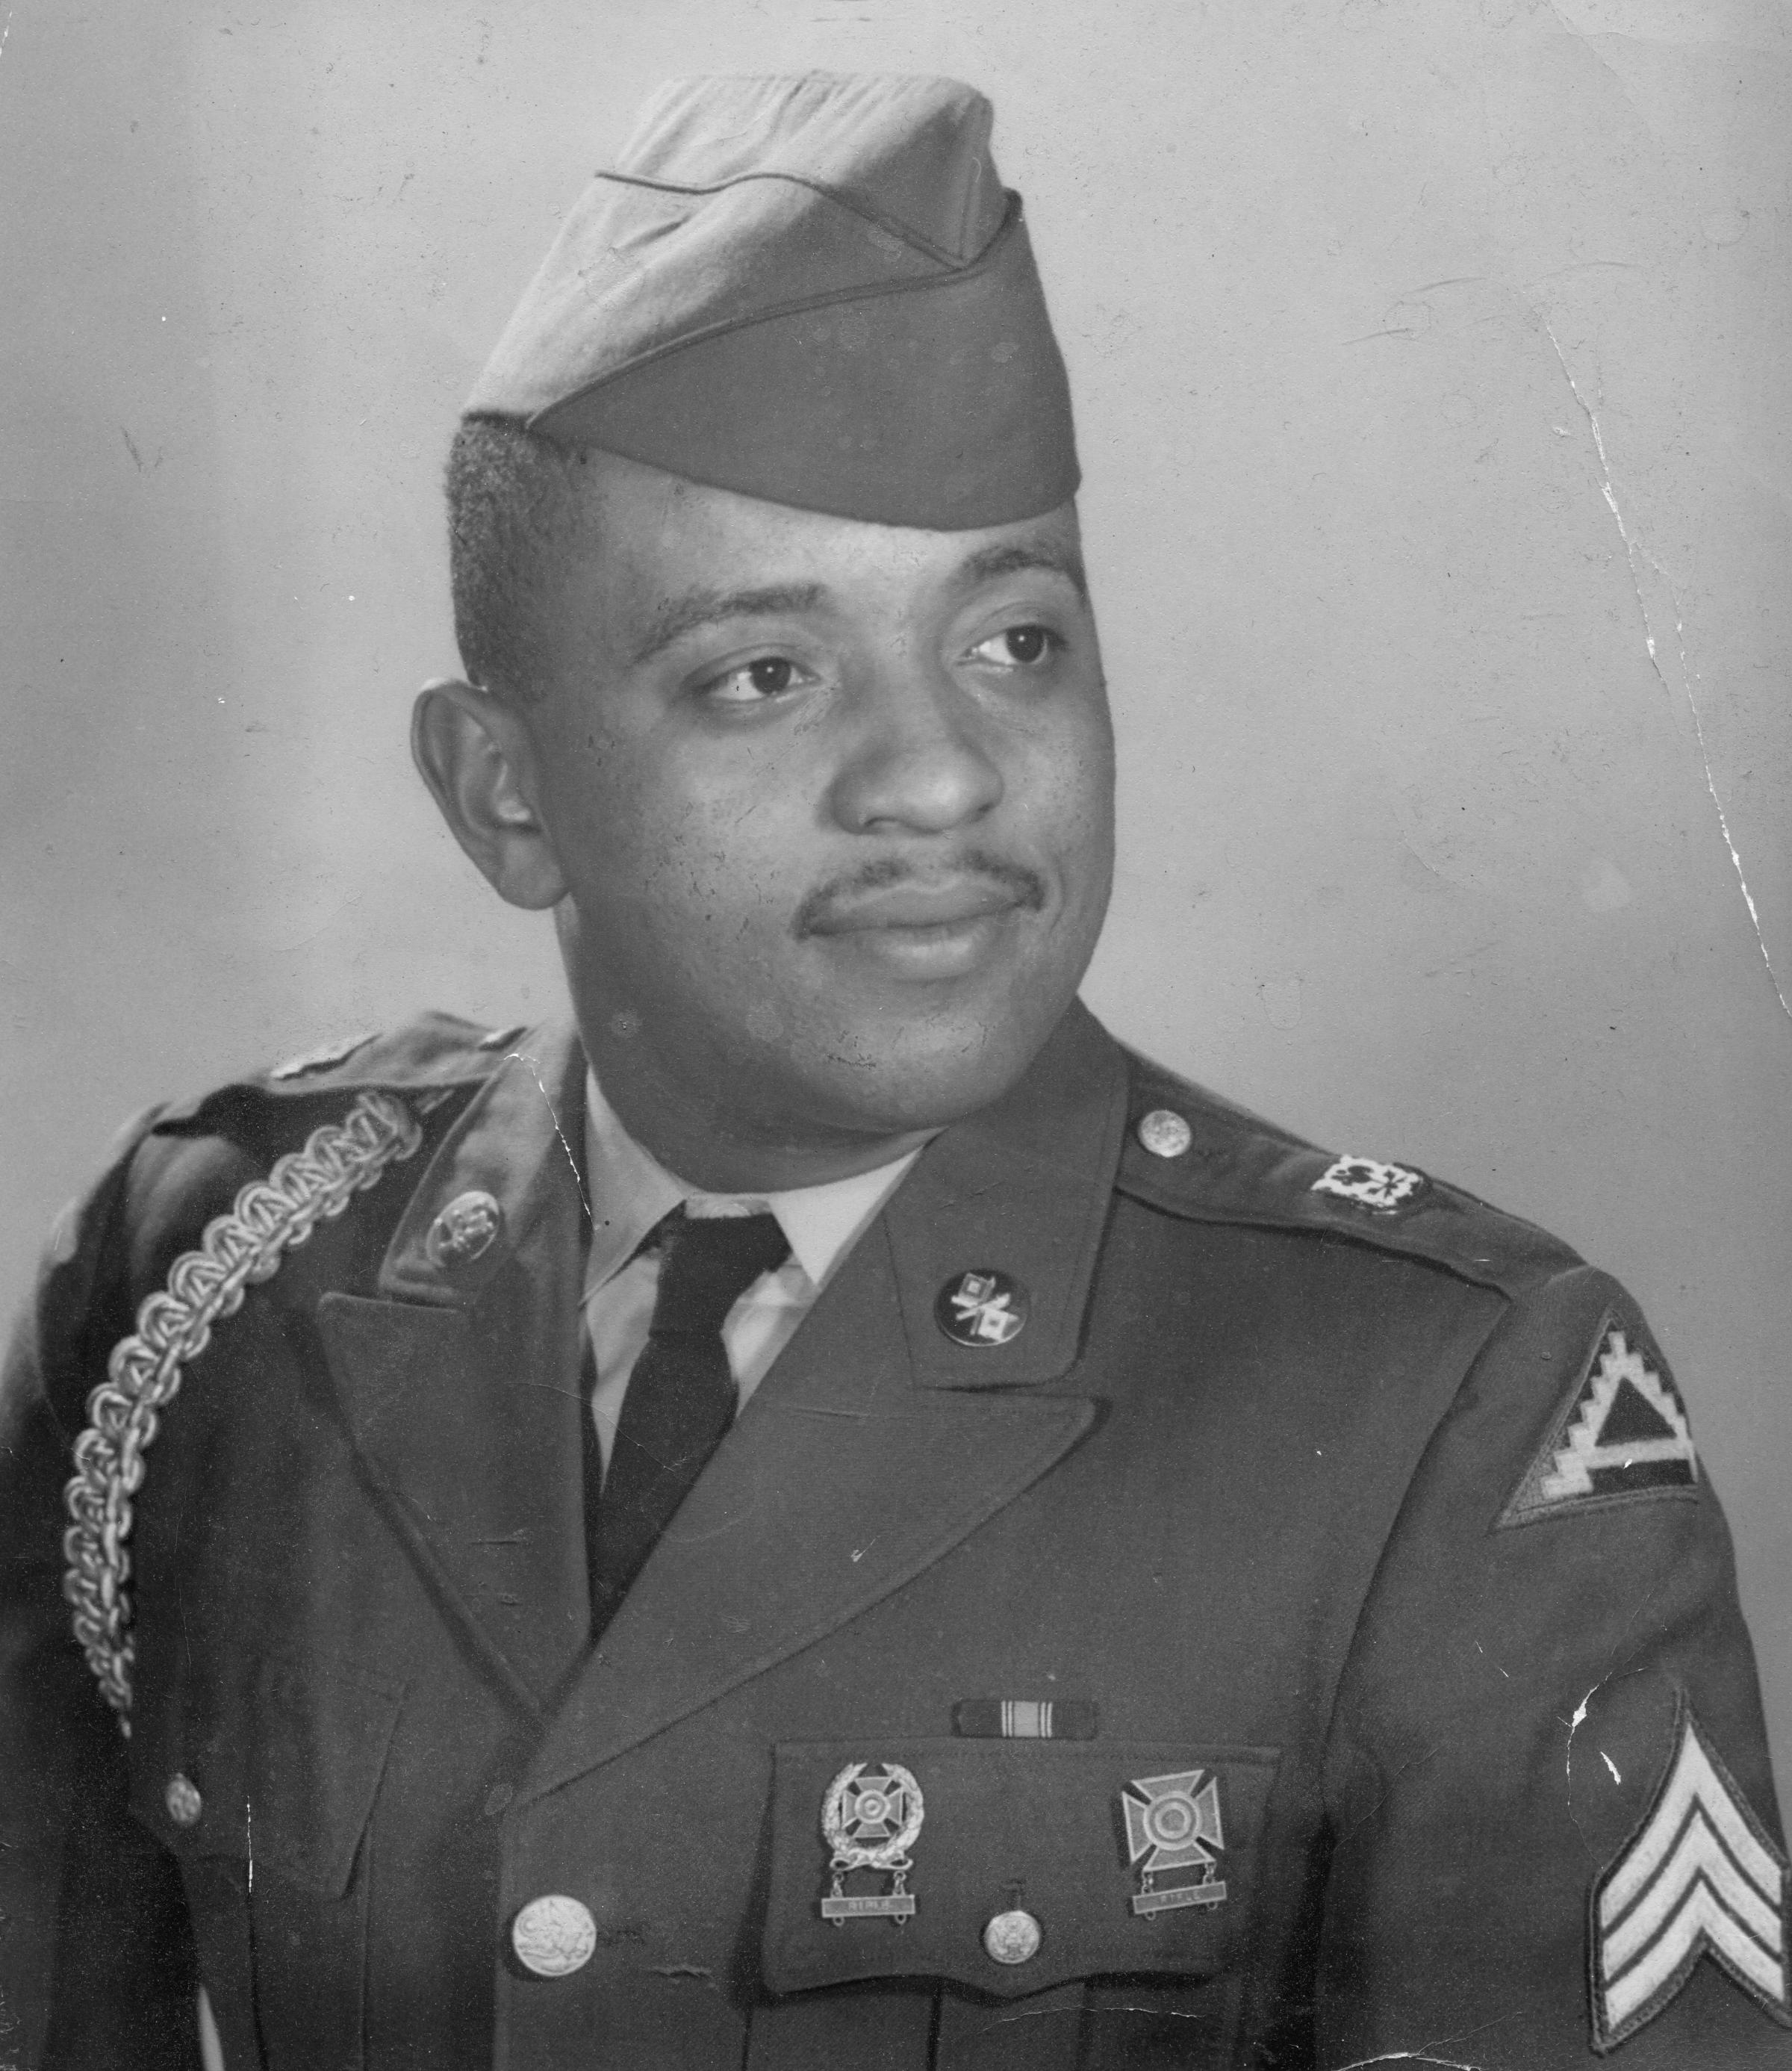 Sergeant Leroy W. Pitts, U.S. Army